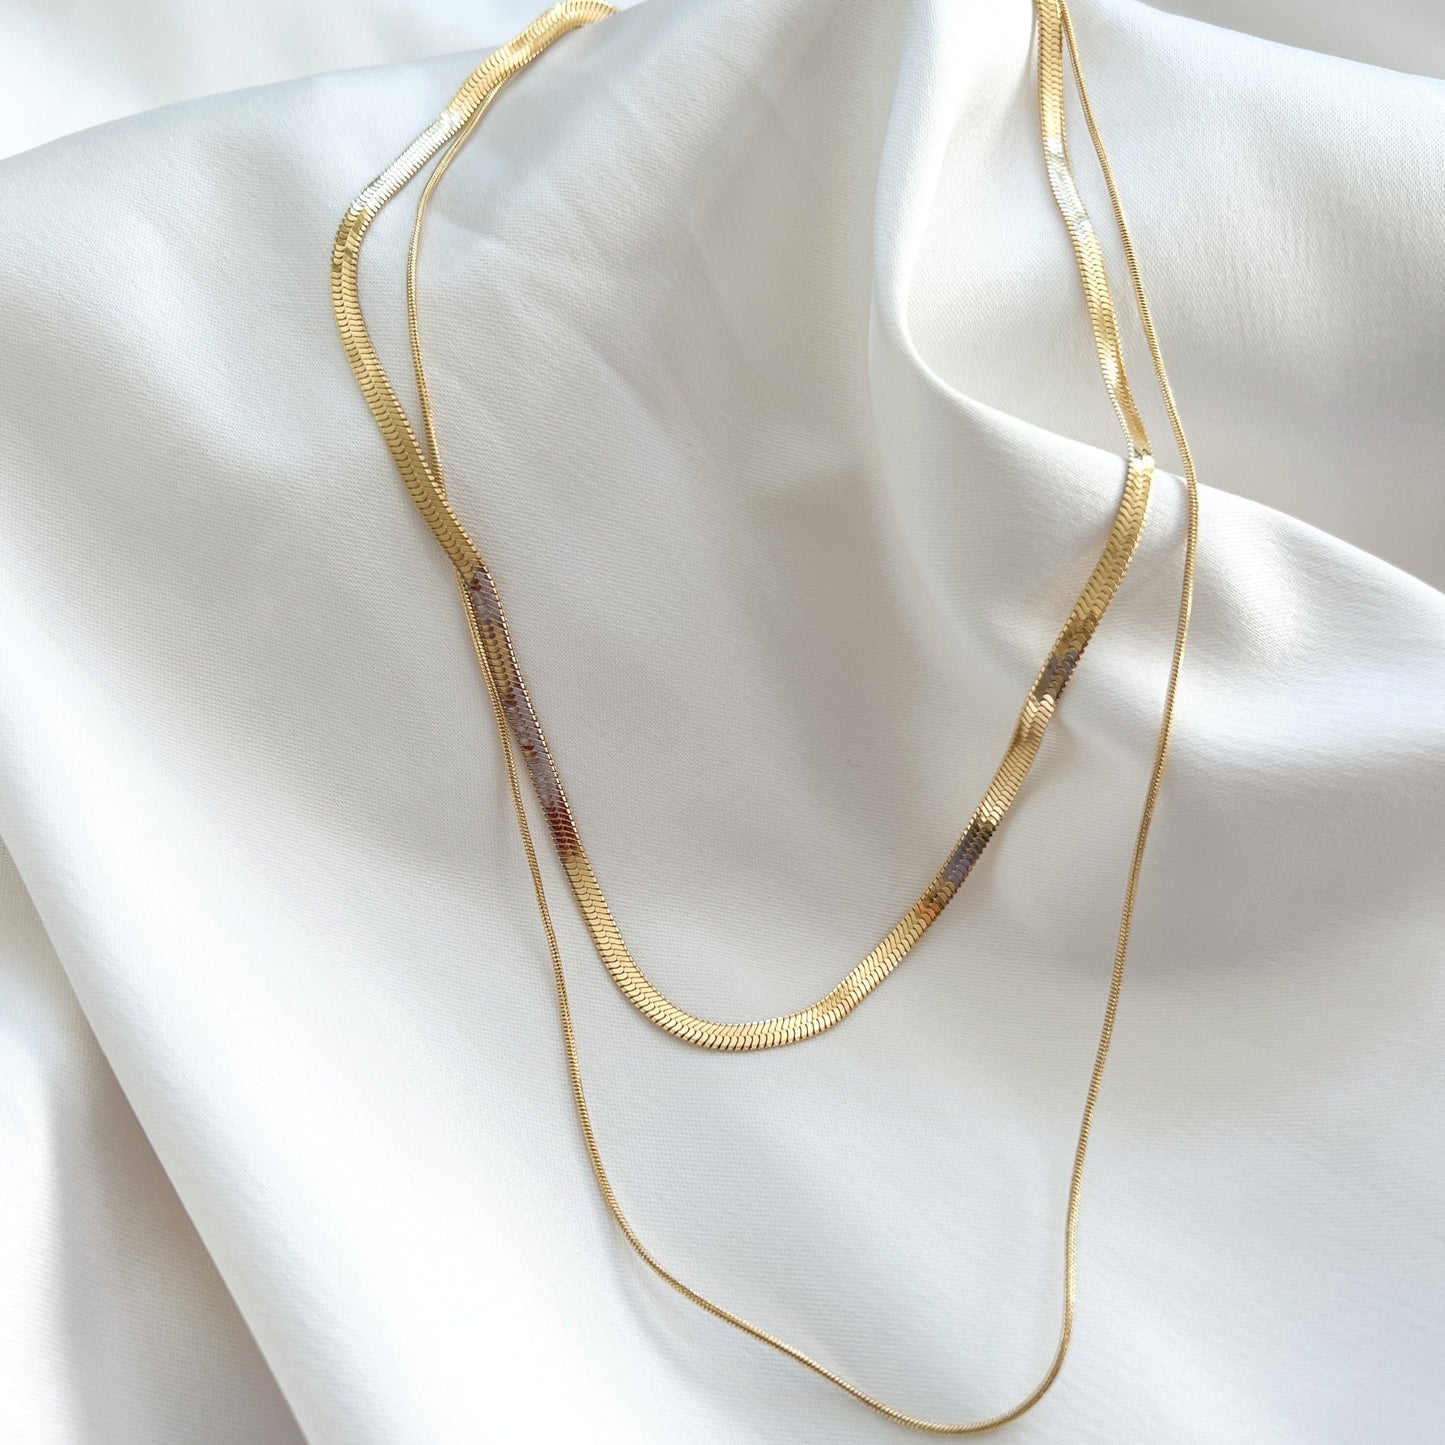 Layered Herringbone Chain Necklace